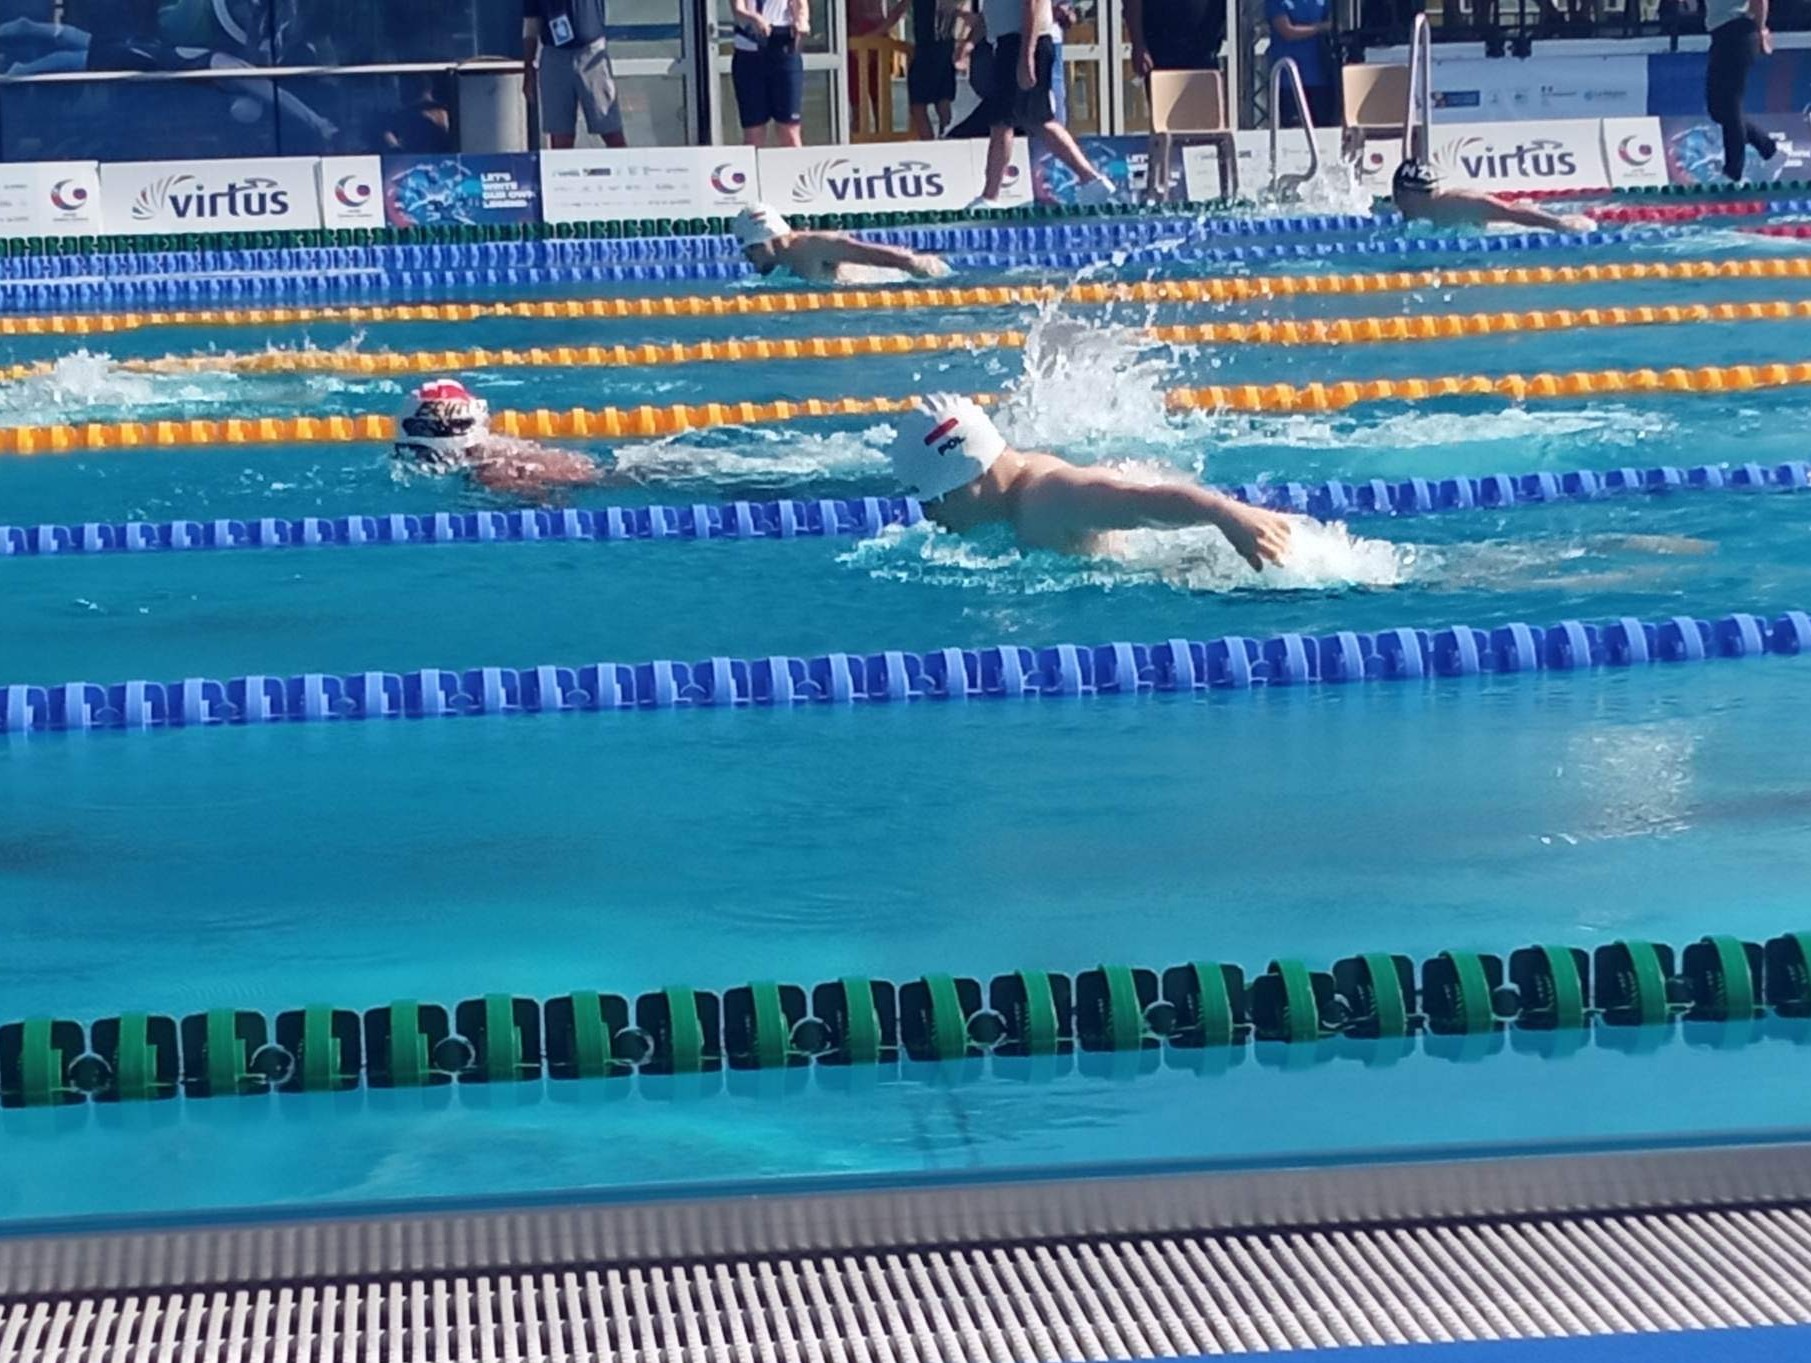 Pływacy rywalizują w wyścigu na basenie. W wodzie widocznych jest czterech zawodników, w tym dwóch ma na czepkach flagę Polski.